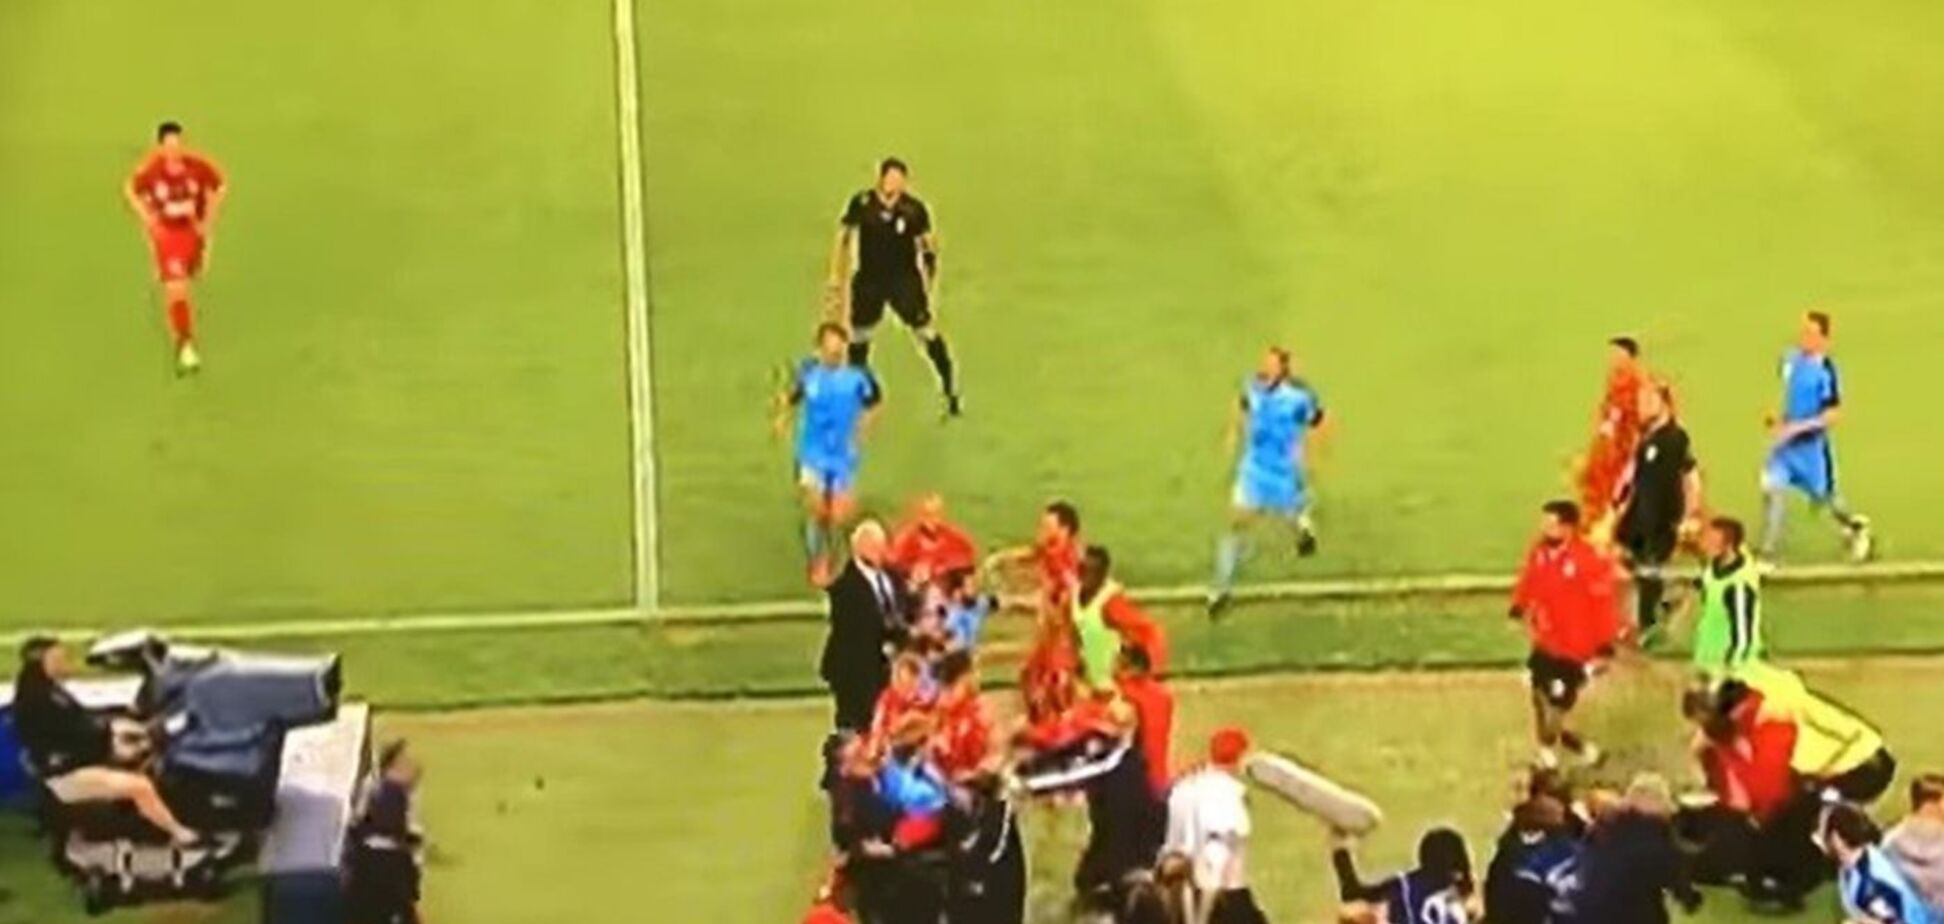 Футболіст на матчі 'обійняв' хлопчика з м'ячем, спровокувавши масову бійку: опубліковано відео